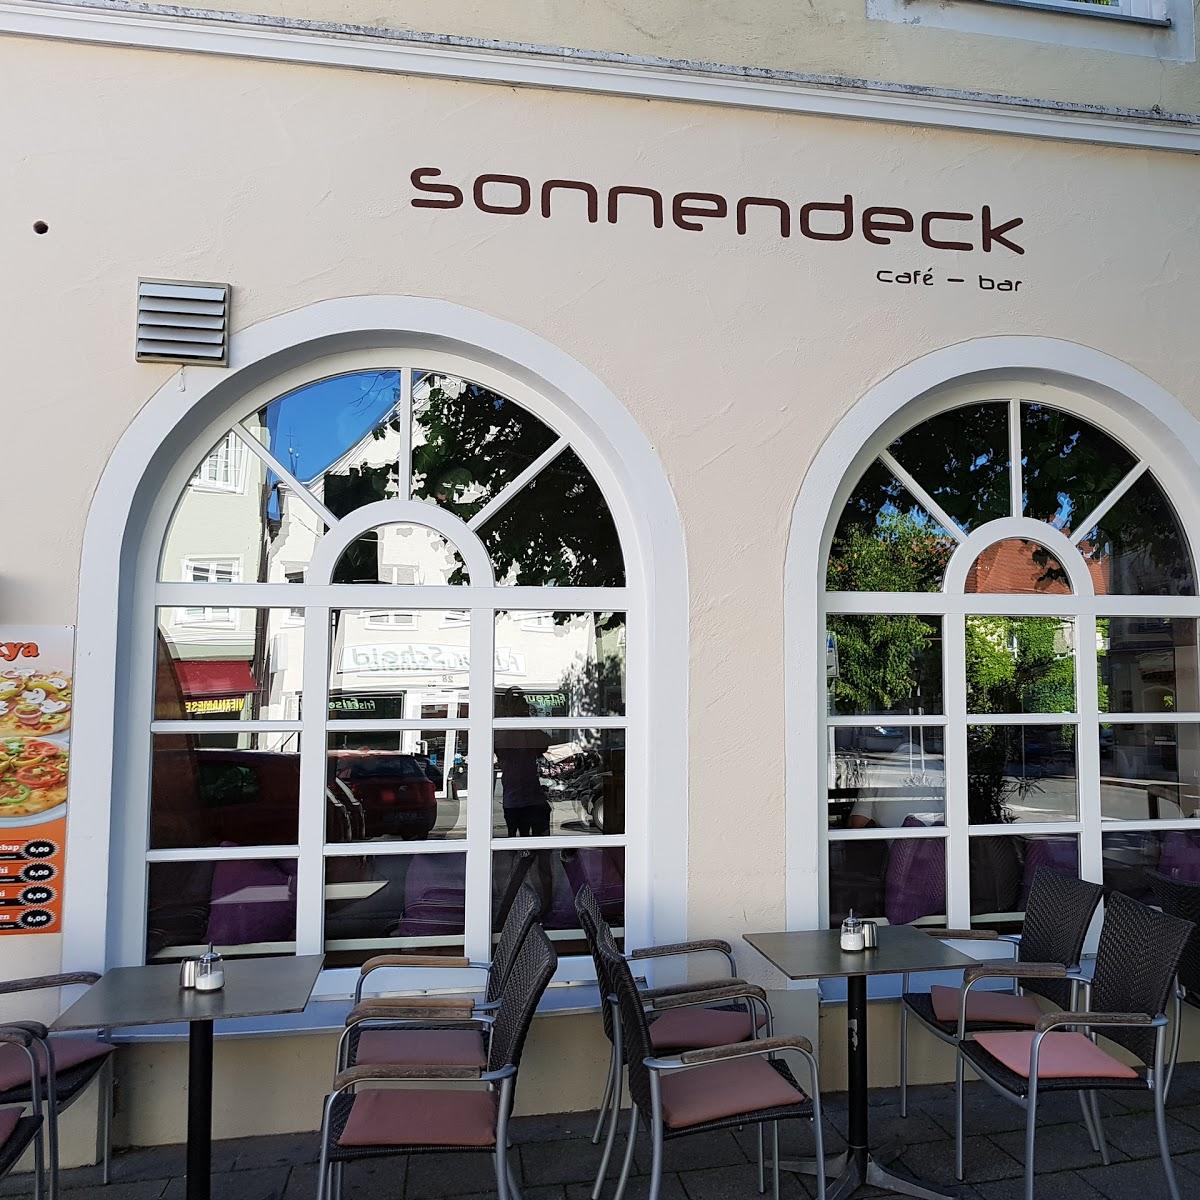 Restaurant "Café-Bar Sonnendeck" in Weilheim in Oberbayern